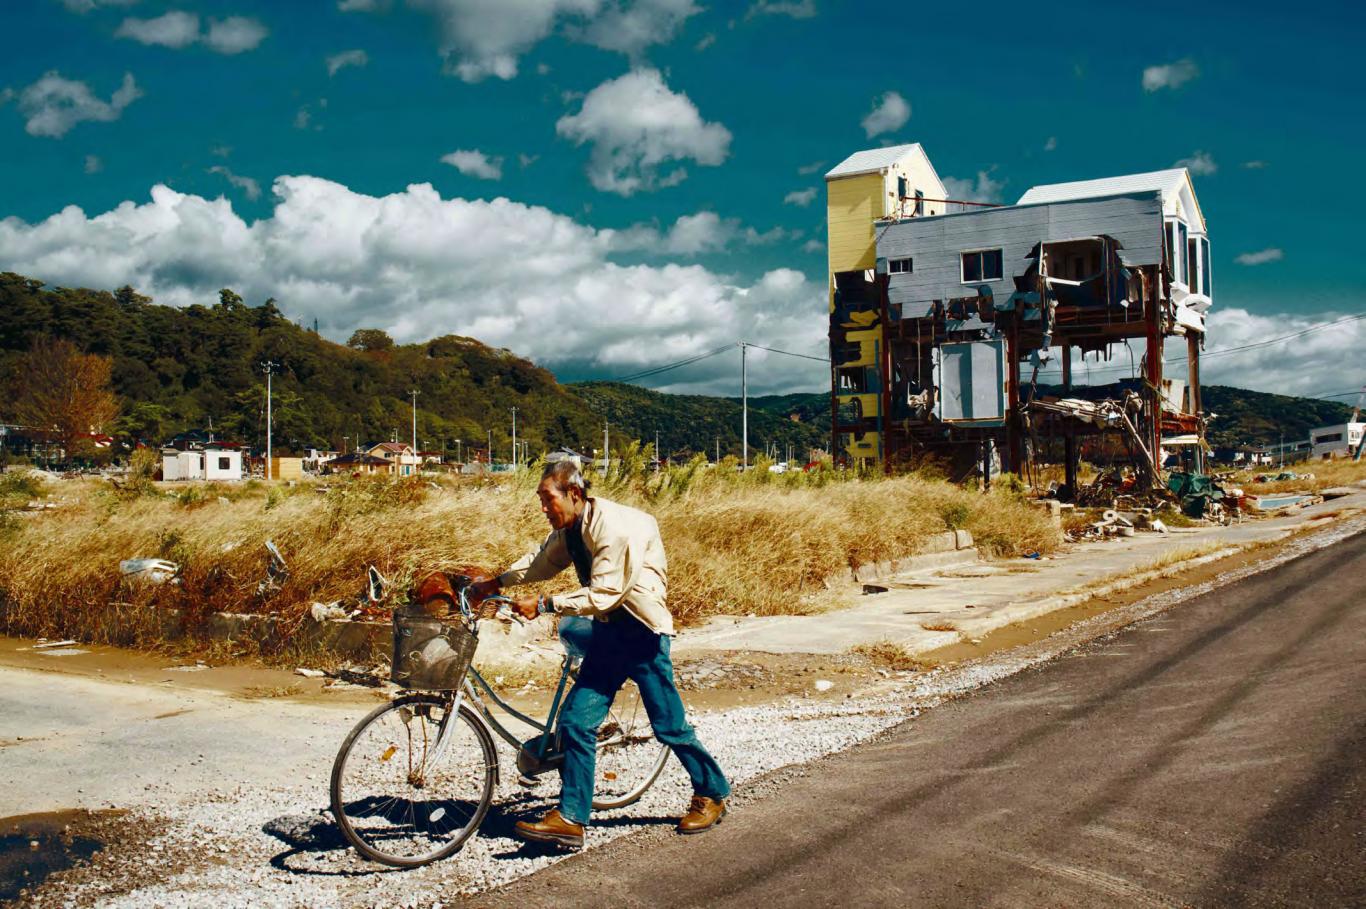 Escena de una ciudad desolada con un hombre caminando, bicicleta en mano, entre la soledad